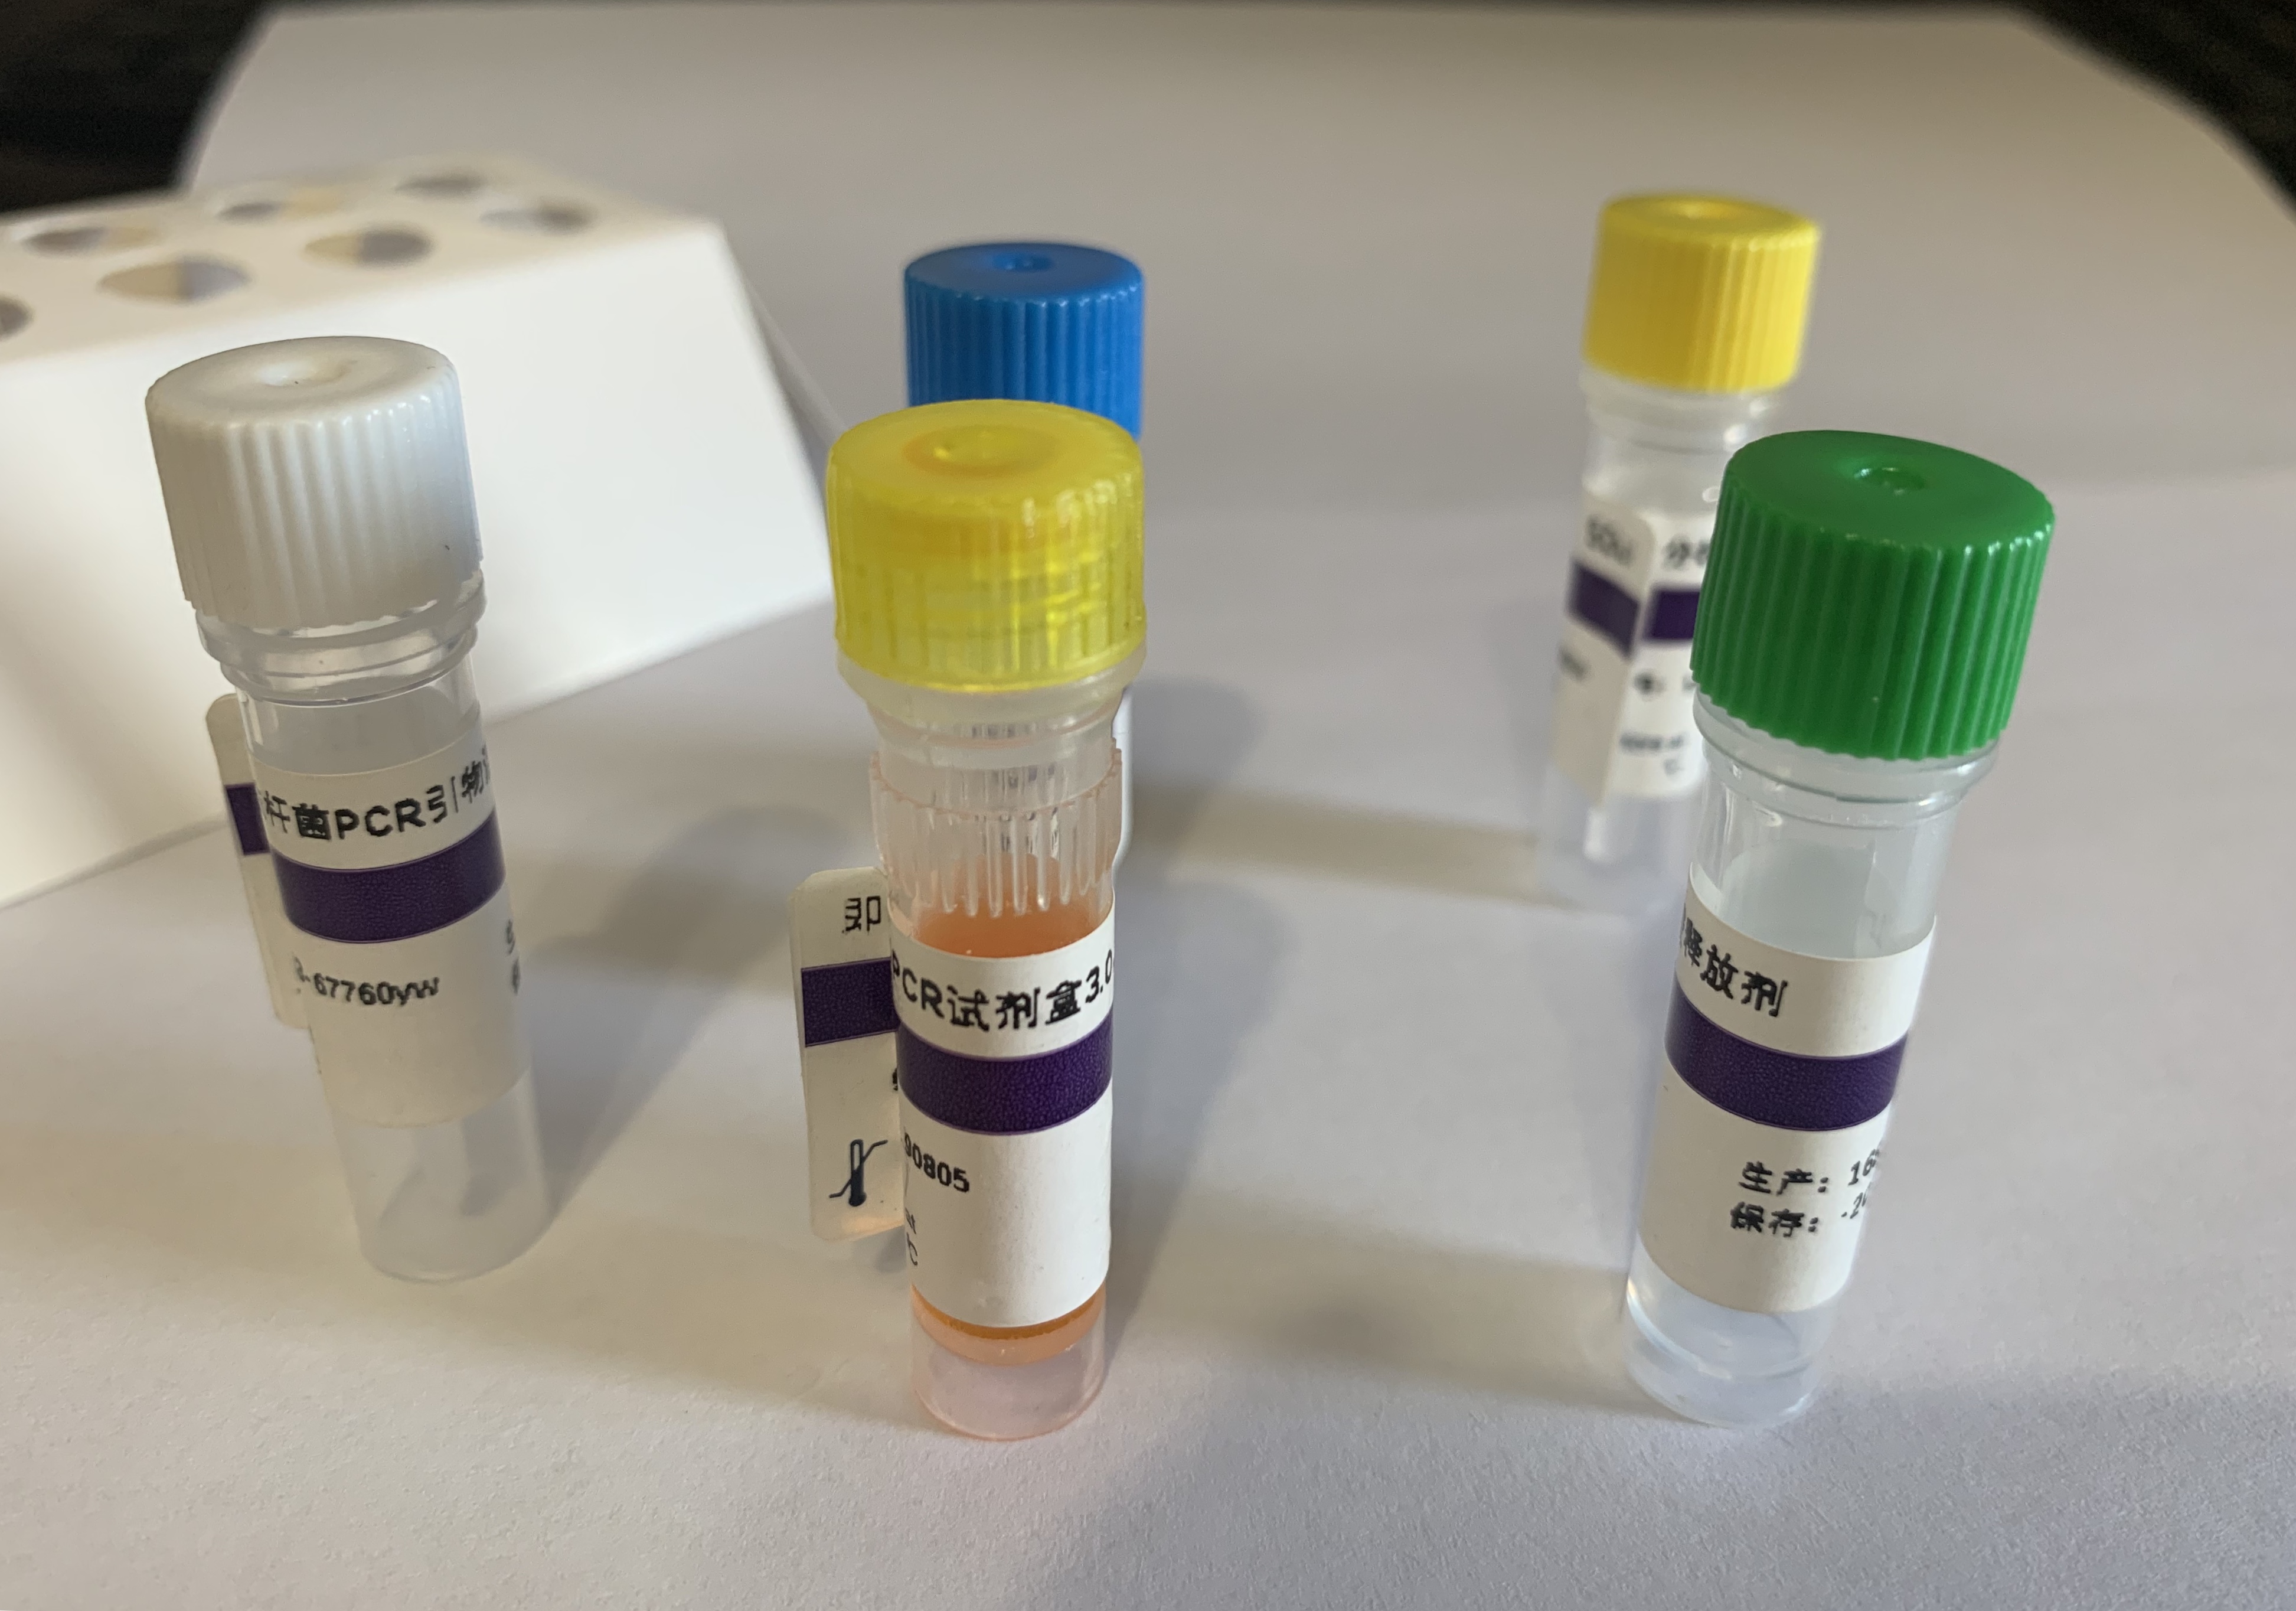 绵羊脓疱病毒探针法荧光定量PCR试剂盒